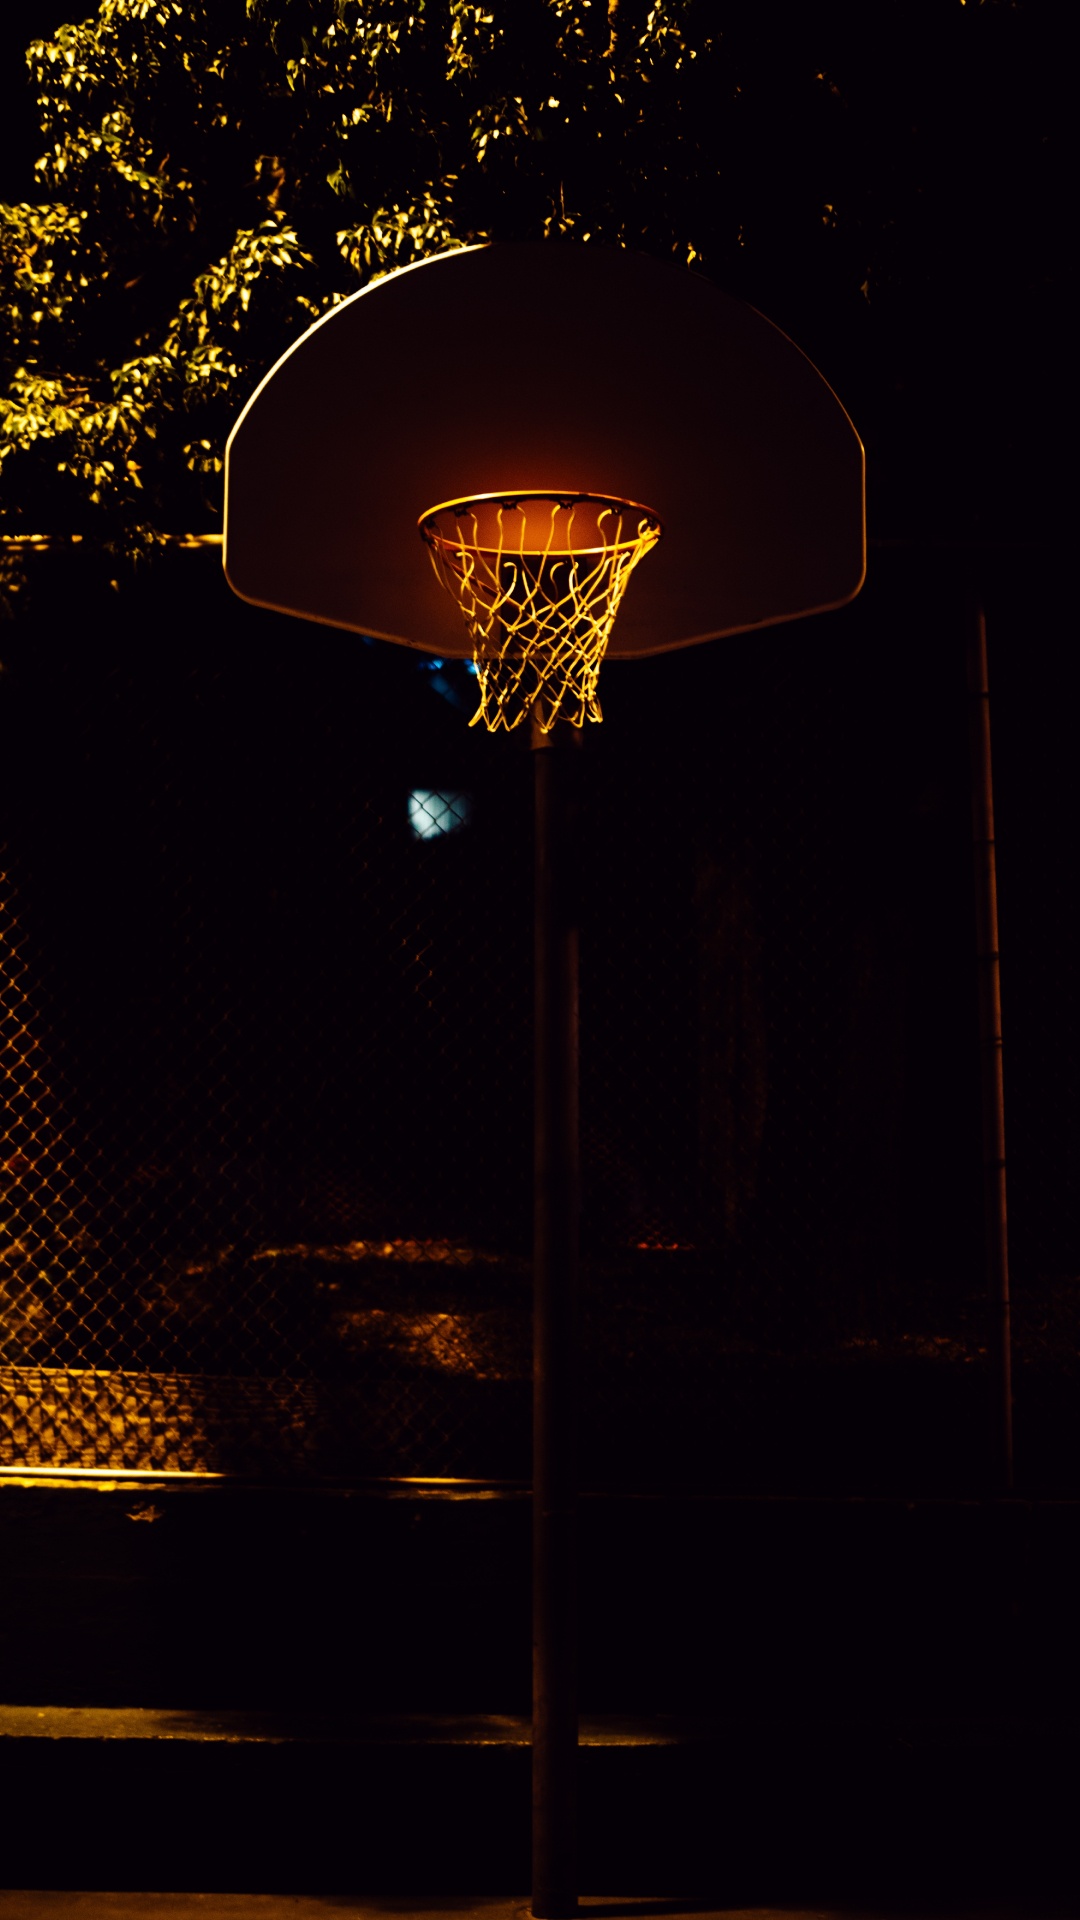 Panier de Basket Avec Lumière Allumée Pendant la Nuit. Wallpaper in 1080x1920 Resolution